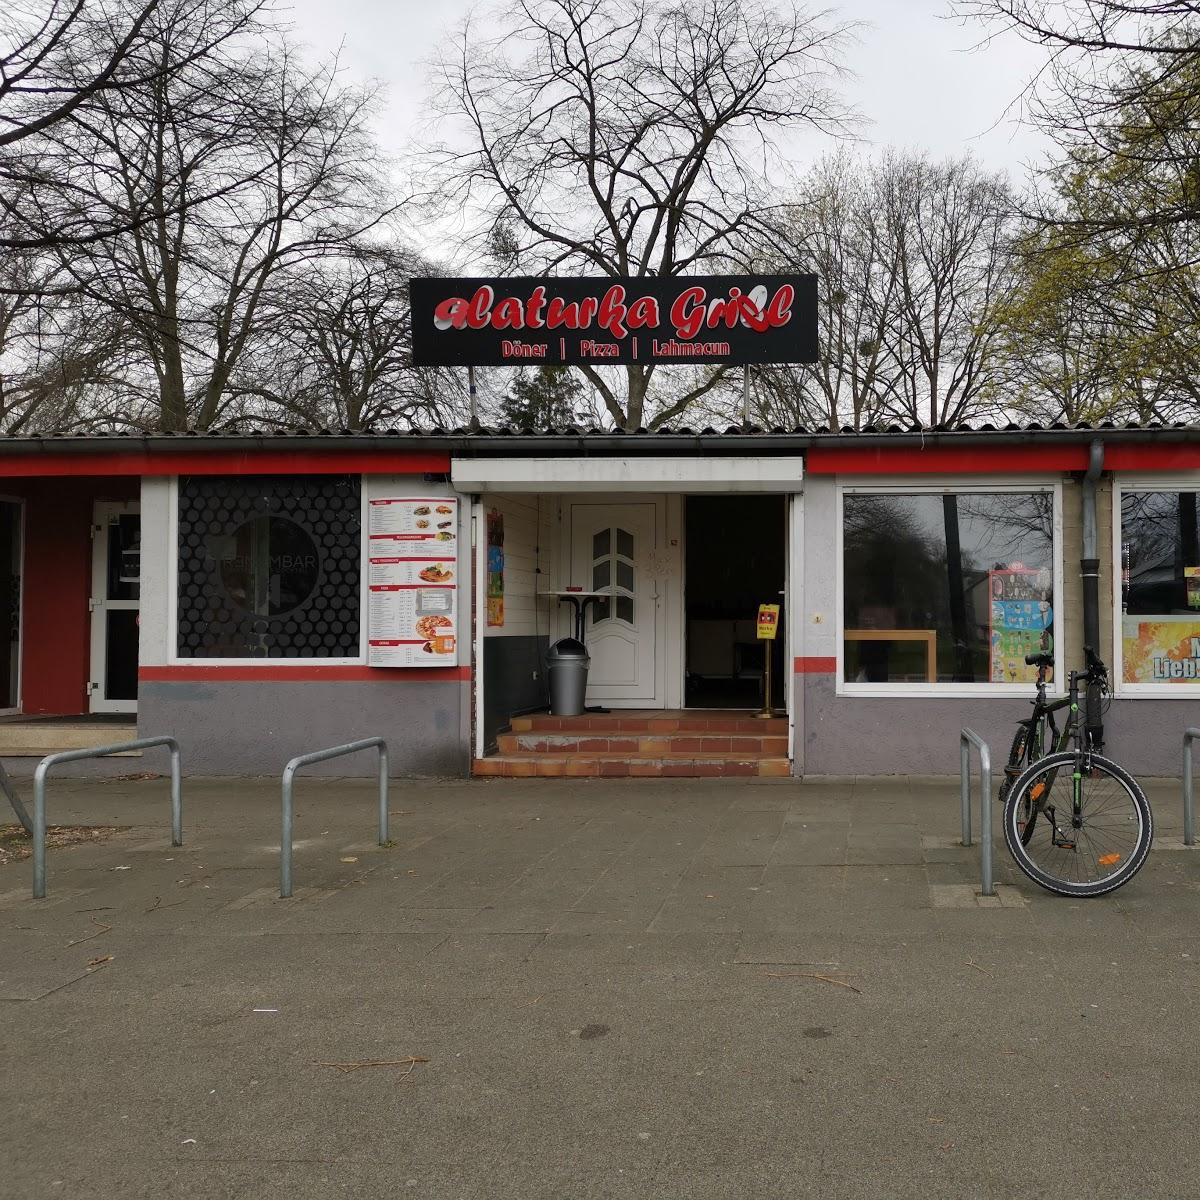 Restaurant "Alaturka Grill" in Hannover